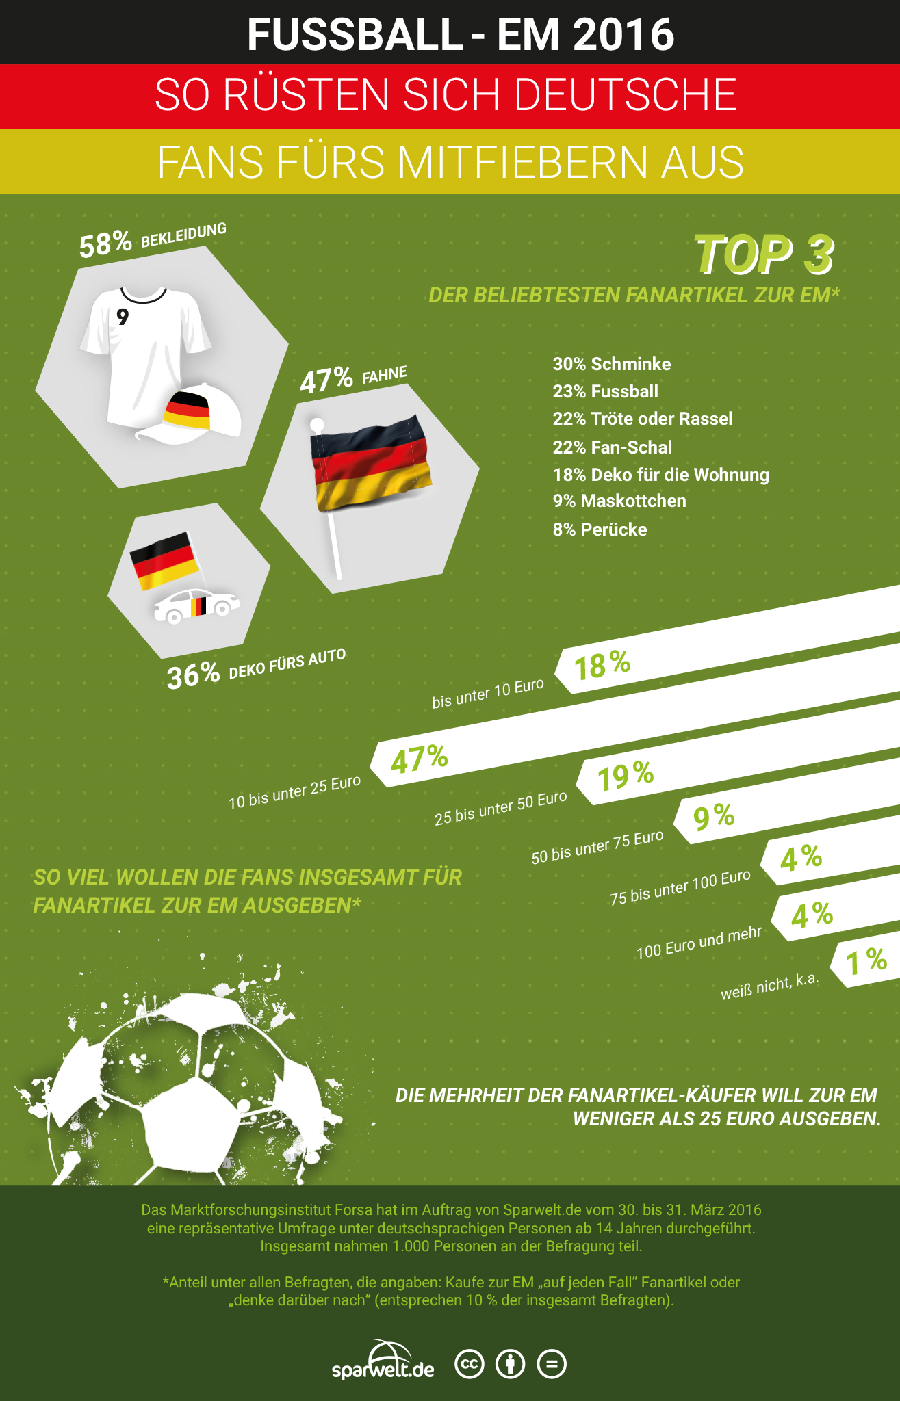 "Wer sich zur Fußball-EM mit Fanartikeln eindeckt, greift am ehesten zu Bekleidung (58 %) wie T-Shirts, Pullovern oder Mützen", sagt Dr. Tim Seewöster von Sparwelt.de. 